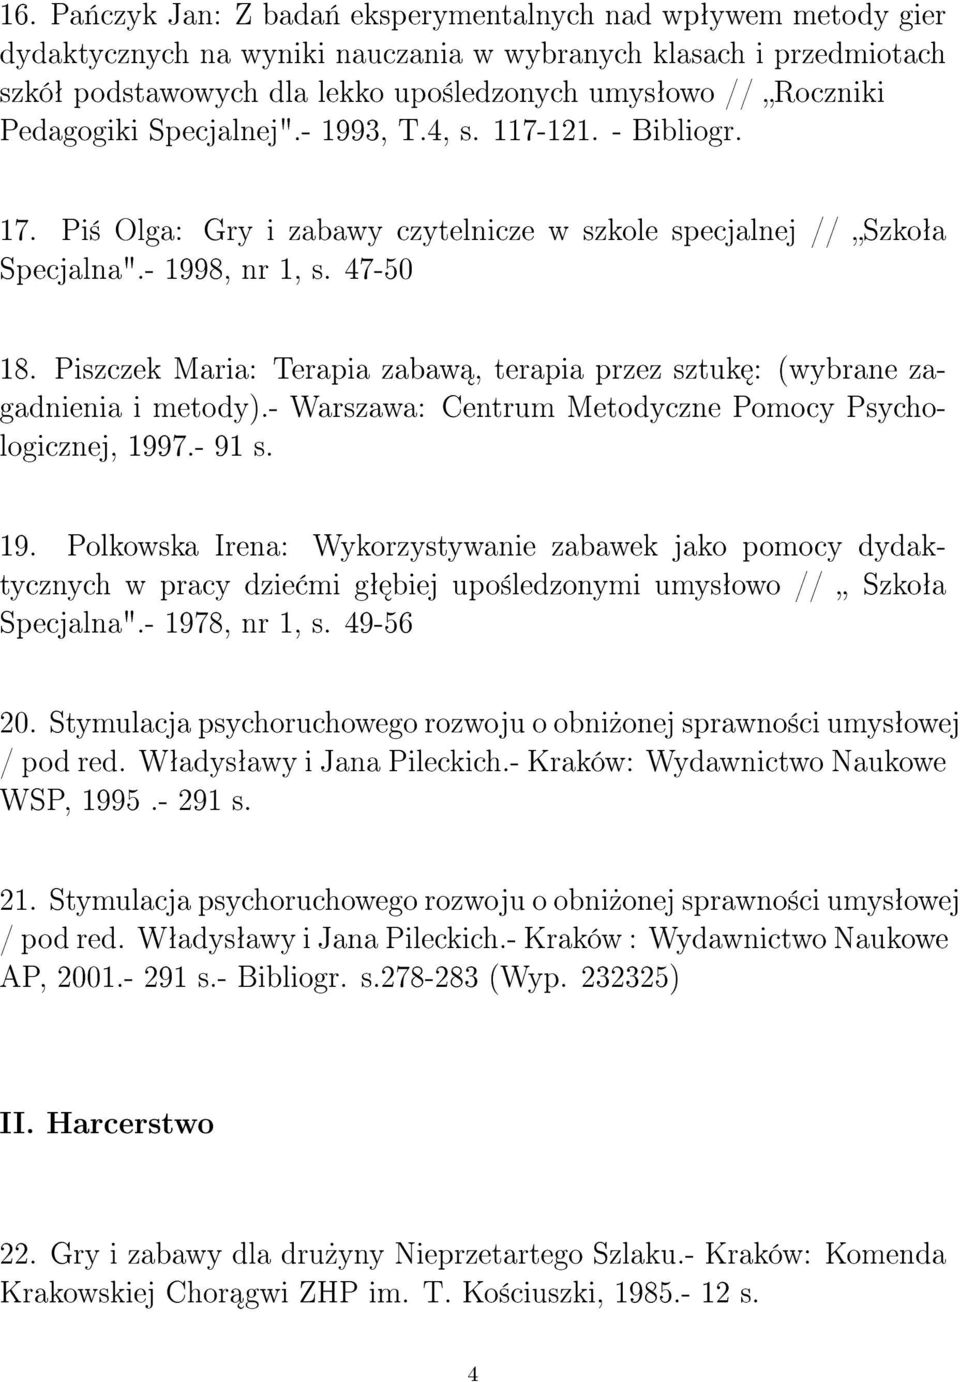 Piszczek Maria: Terapia zabaw, terapia przez sztuk : (wybrane zagadnienia i metody).- Warszawa: Centrum Metodyczne Pomocy Psychologicznej, 199